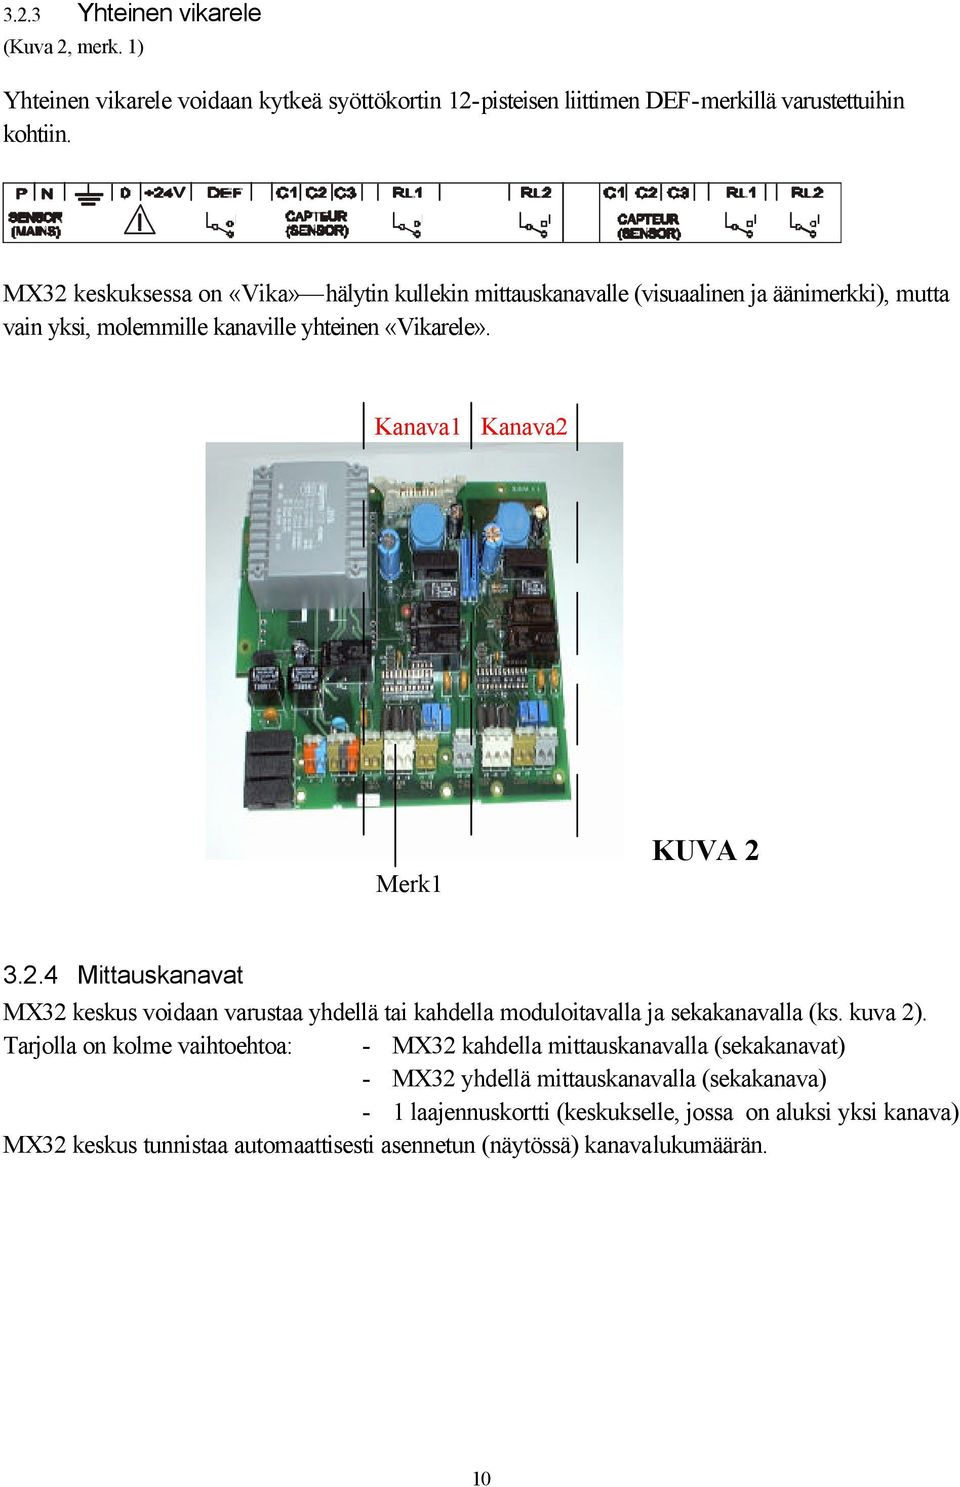 Kanava Kanava2 Merk KUVA 2 3.2.4 Miauskanava MX32 keskus voidaan varusaa yhdellä ai kahdella moduloiavalla ja sekakanavalla (ks. kuva 2).